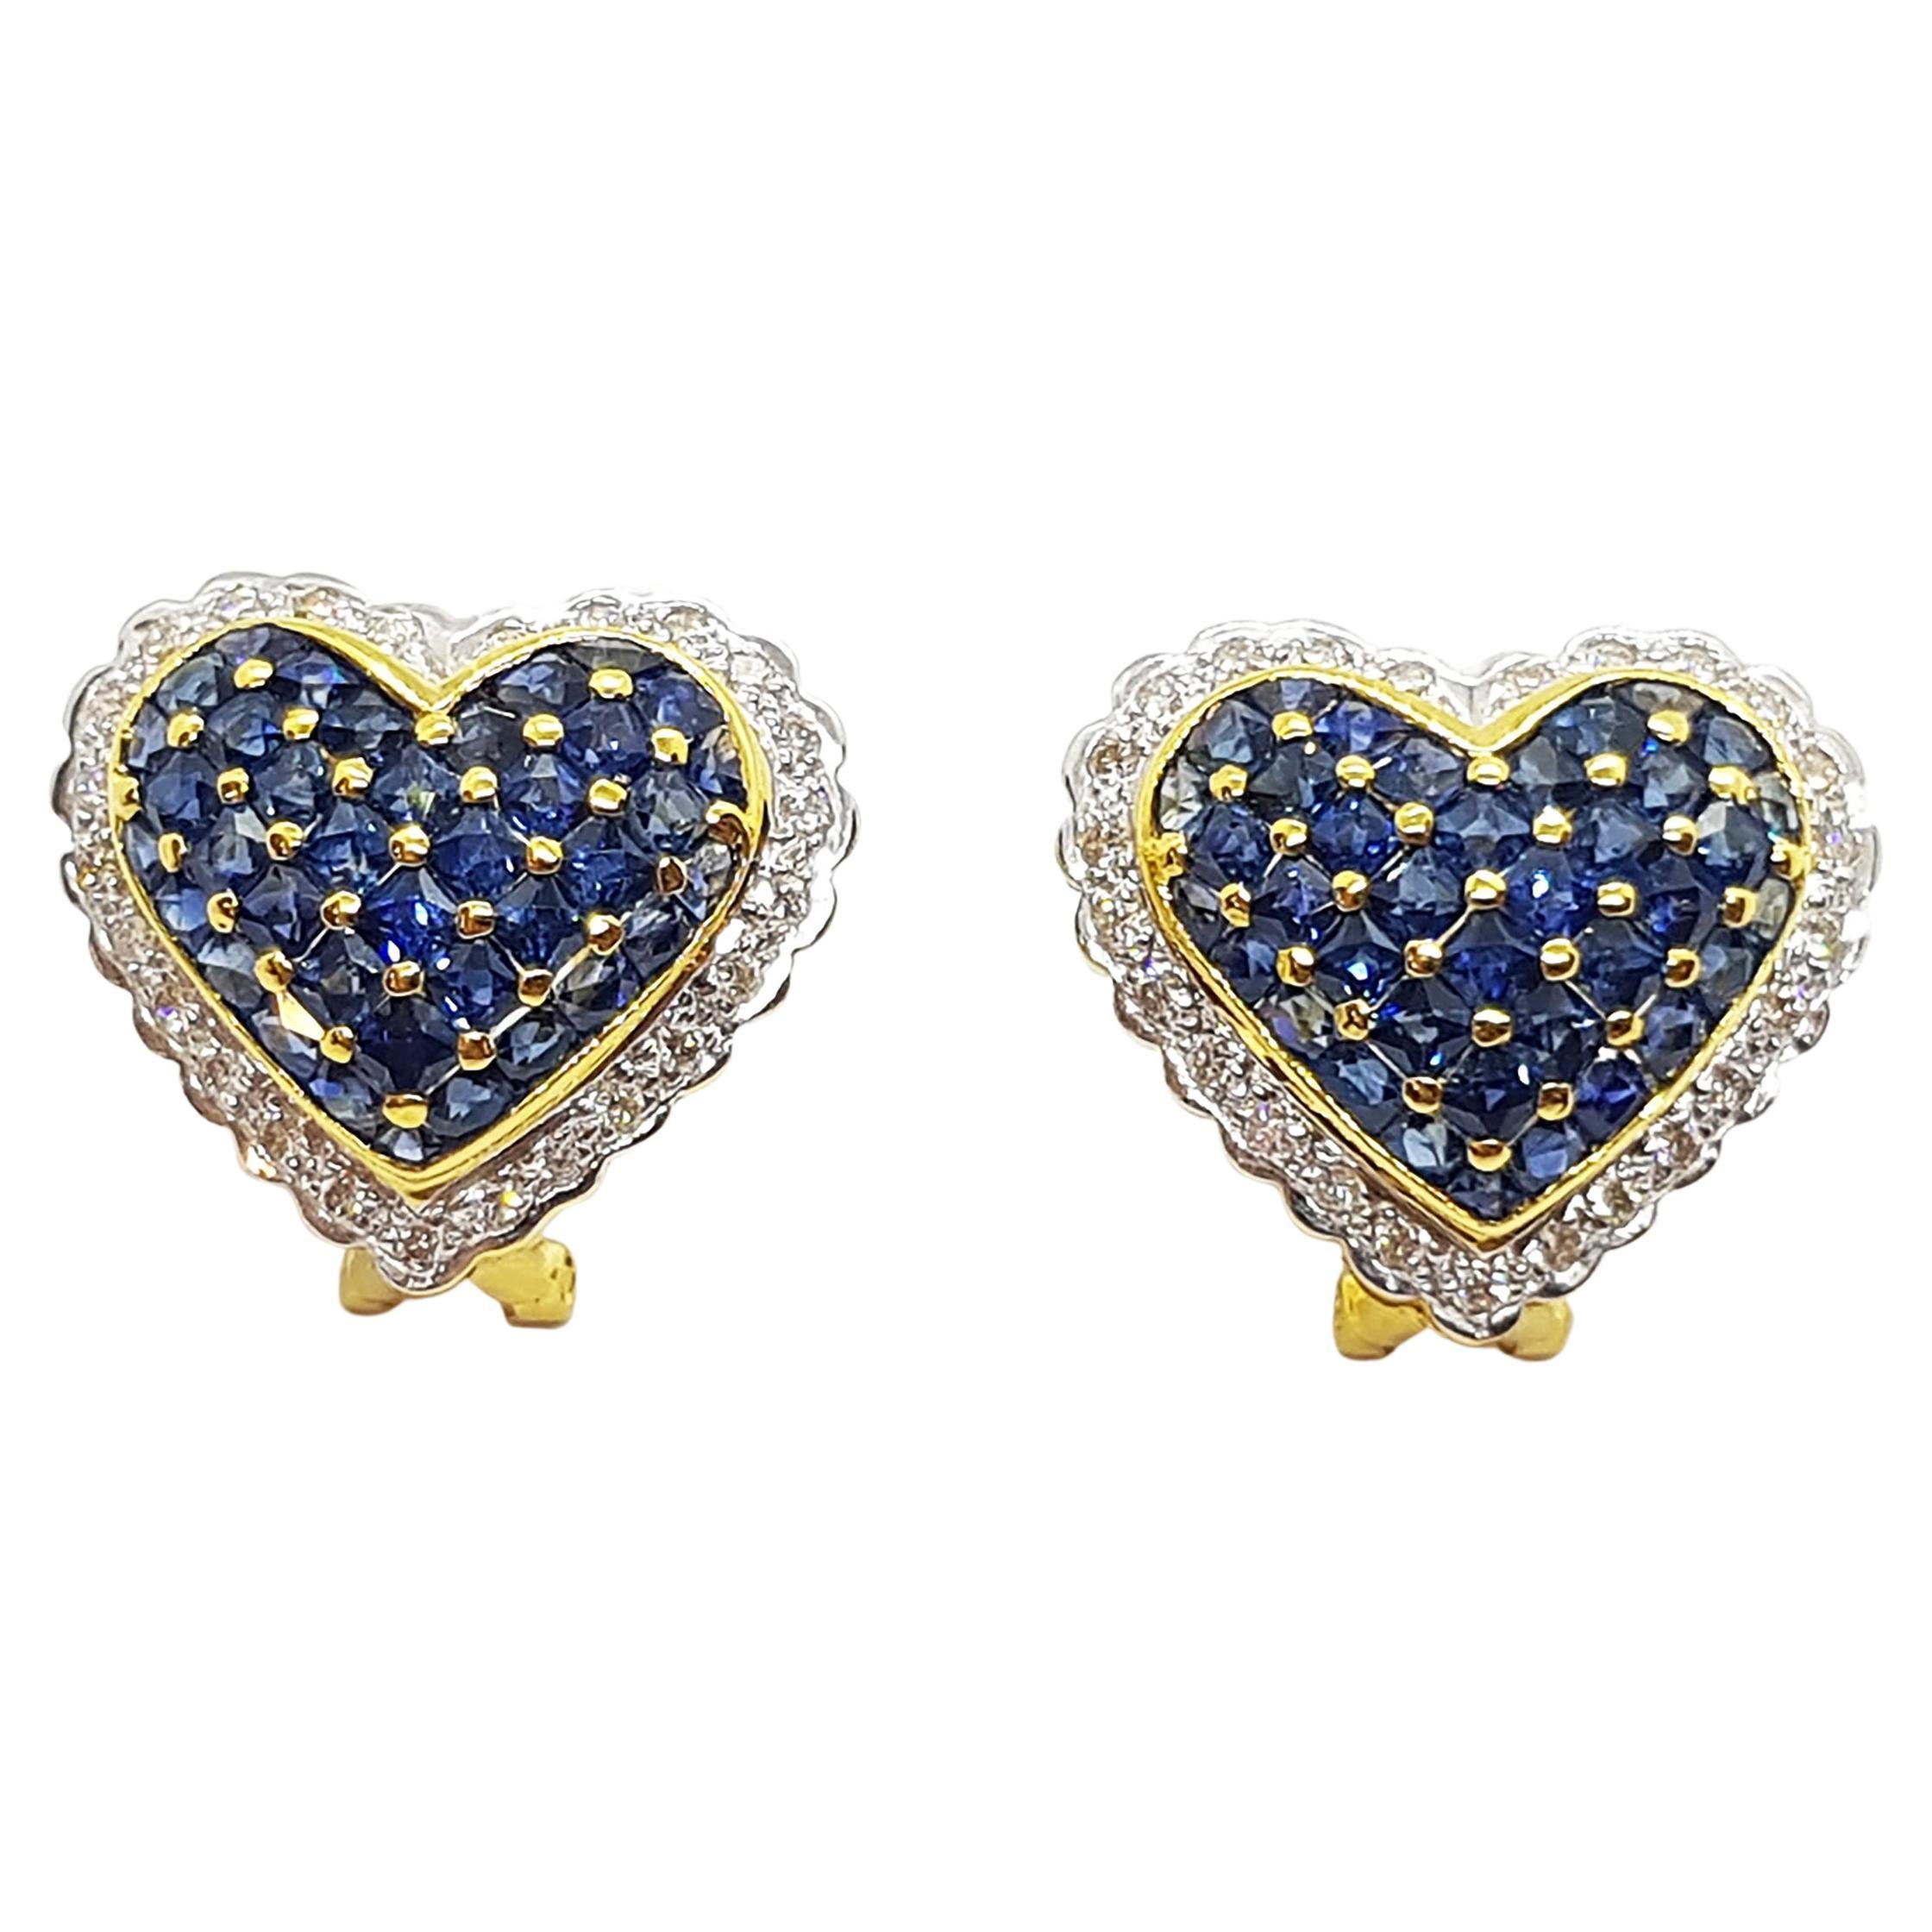 Blue Sapphire with Diamond Heart Earrings Set in 18 Karat Gold Settings